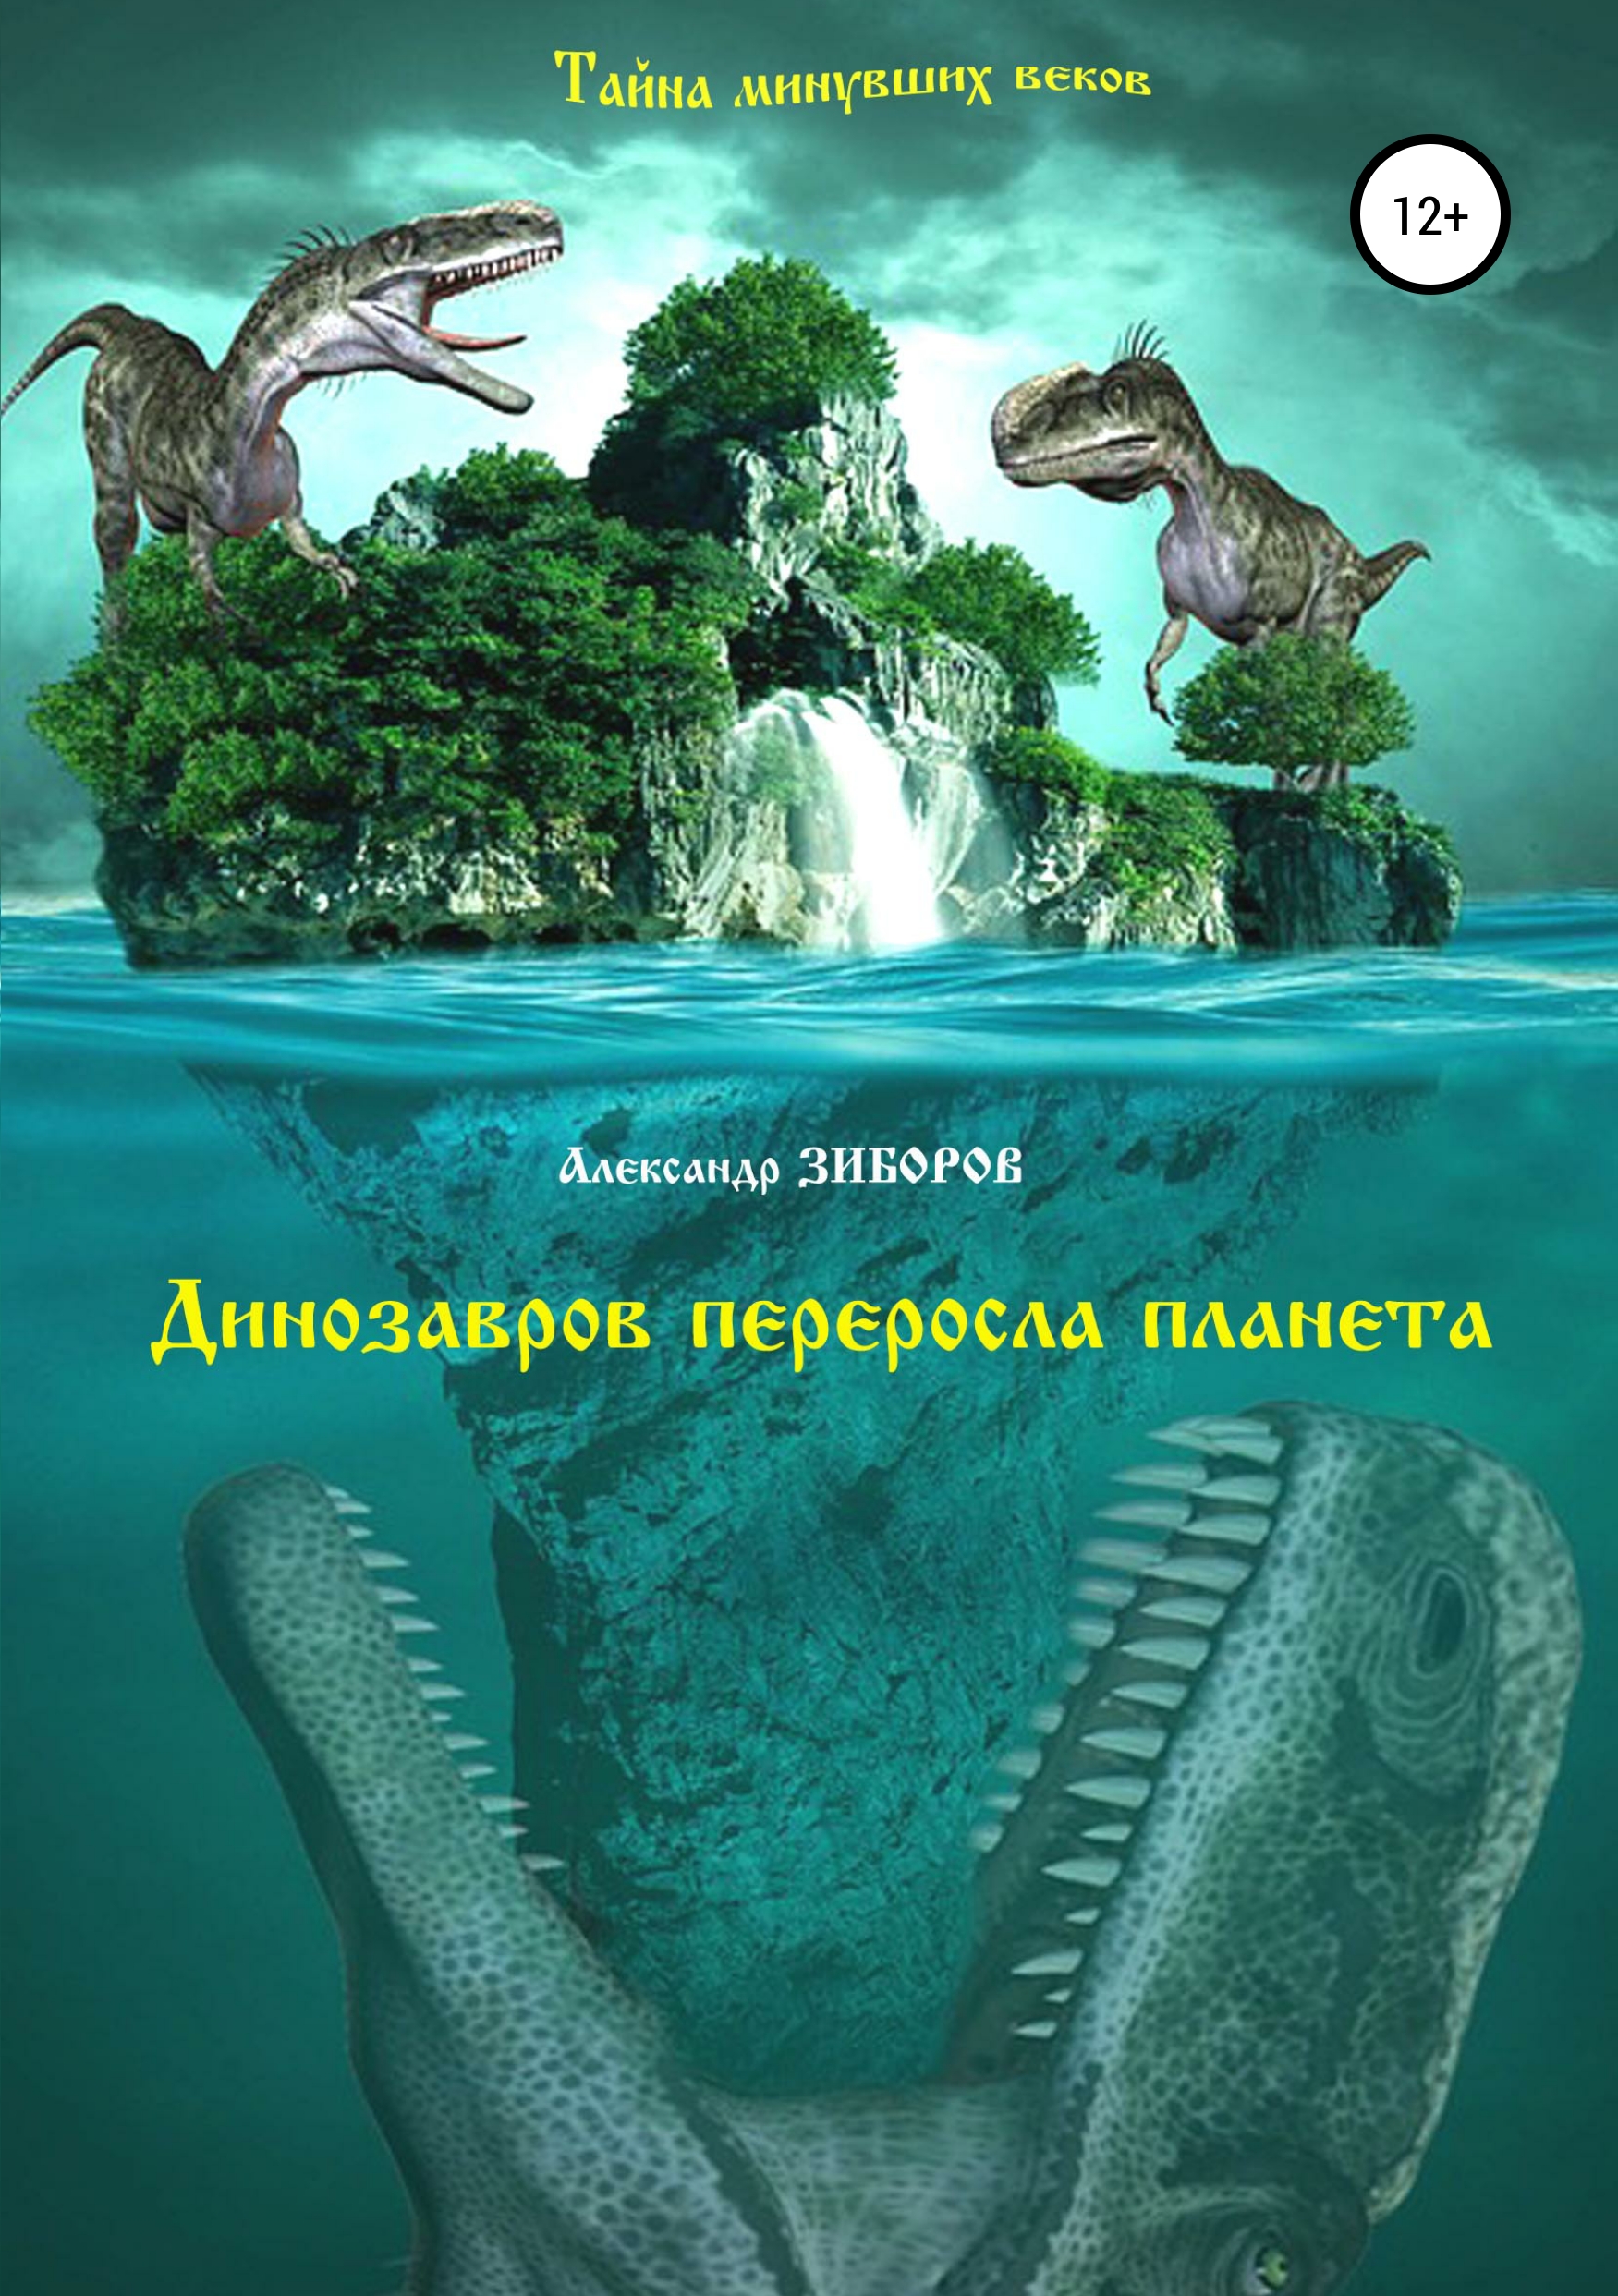 Книга Динозавров переросла планета из серии , созданная Александр Зиборов, может относится к жанру Публицистика: прочее, Документальная литература. Стоимость электронной книги Динозавров переросла планета с идентификатором 39140256 составляет 0 руб.